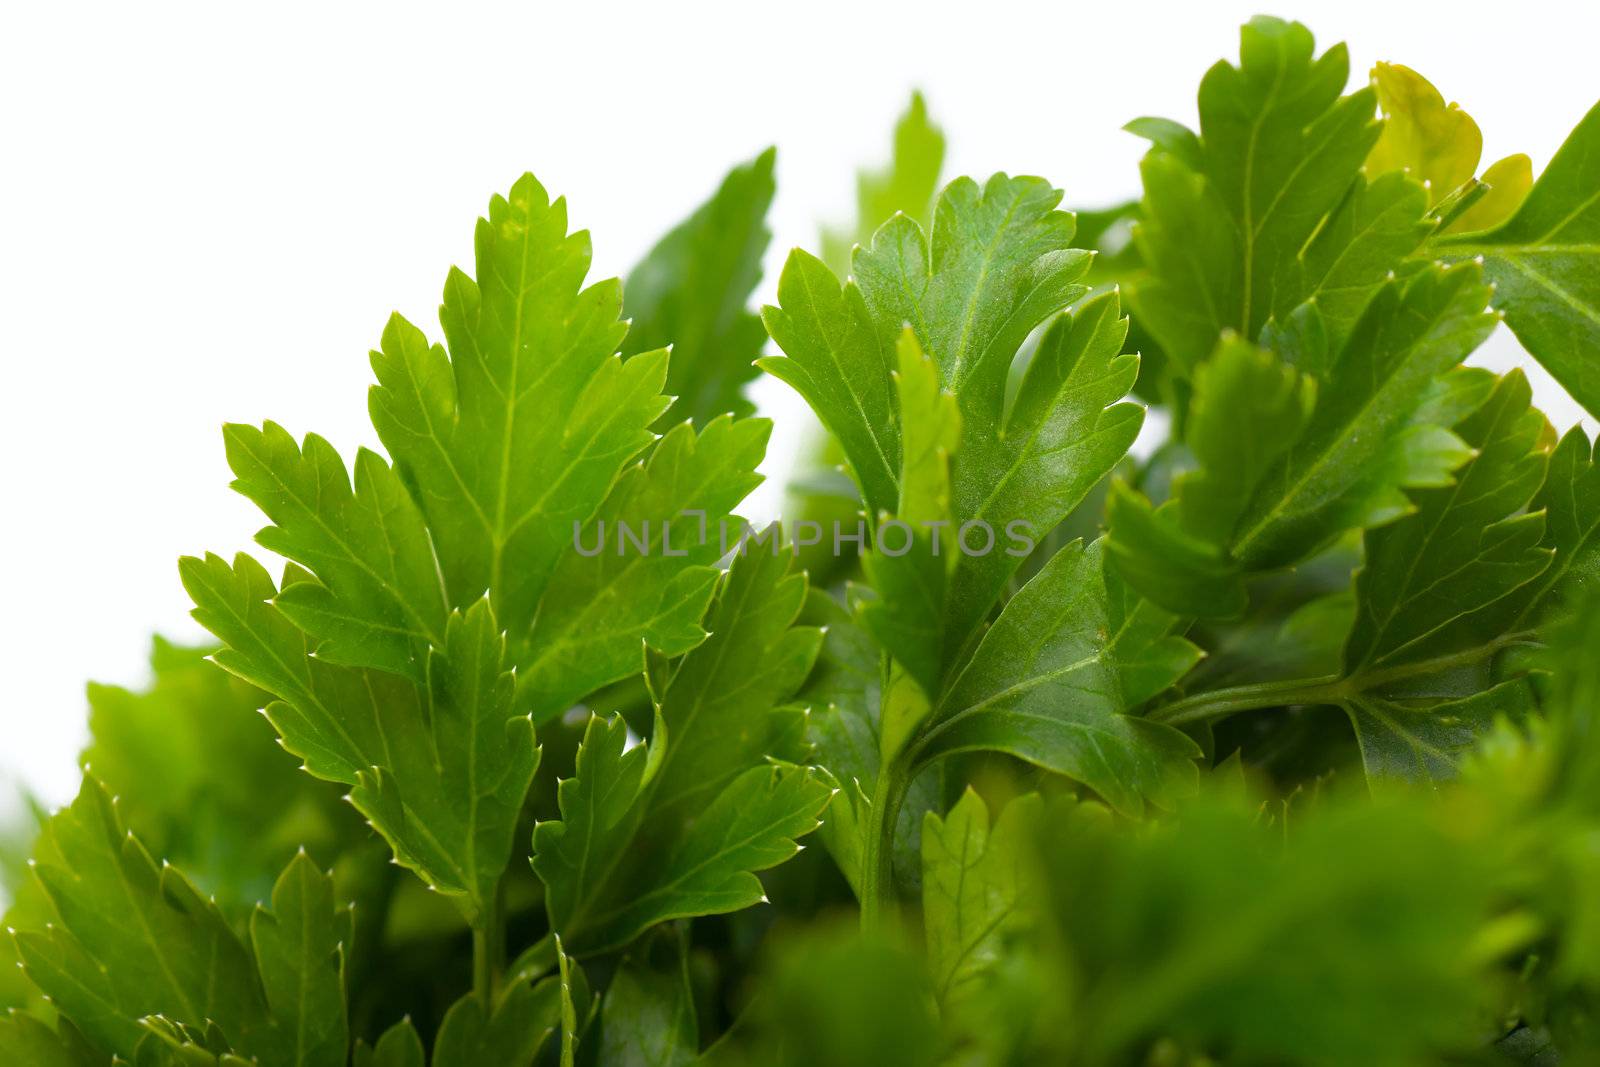 Macro view of fresh green parsley leaves